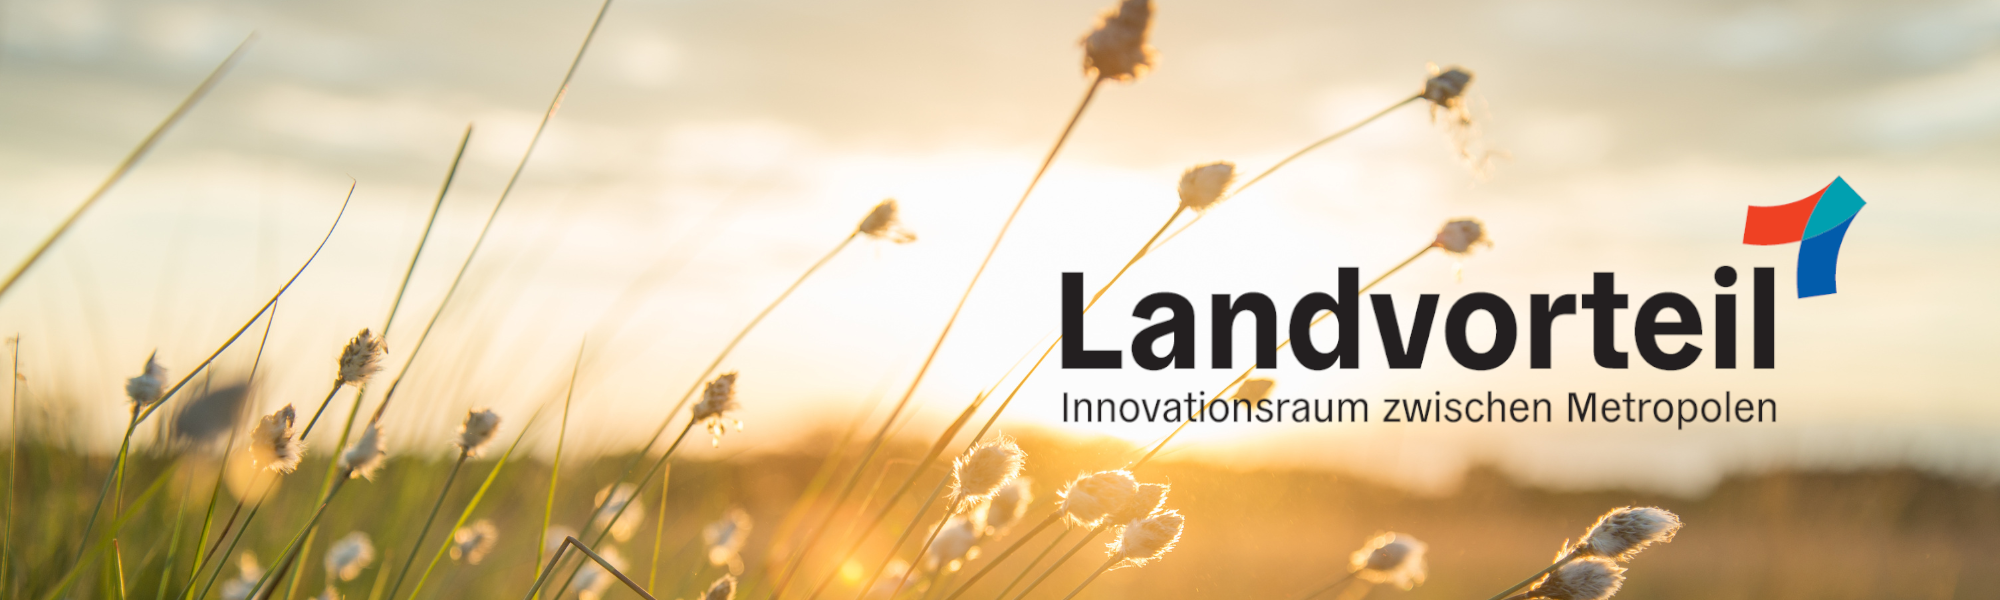 Das Logo von Landvorteil - Innovationsraum zwischen Metropolen